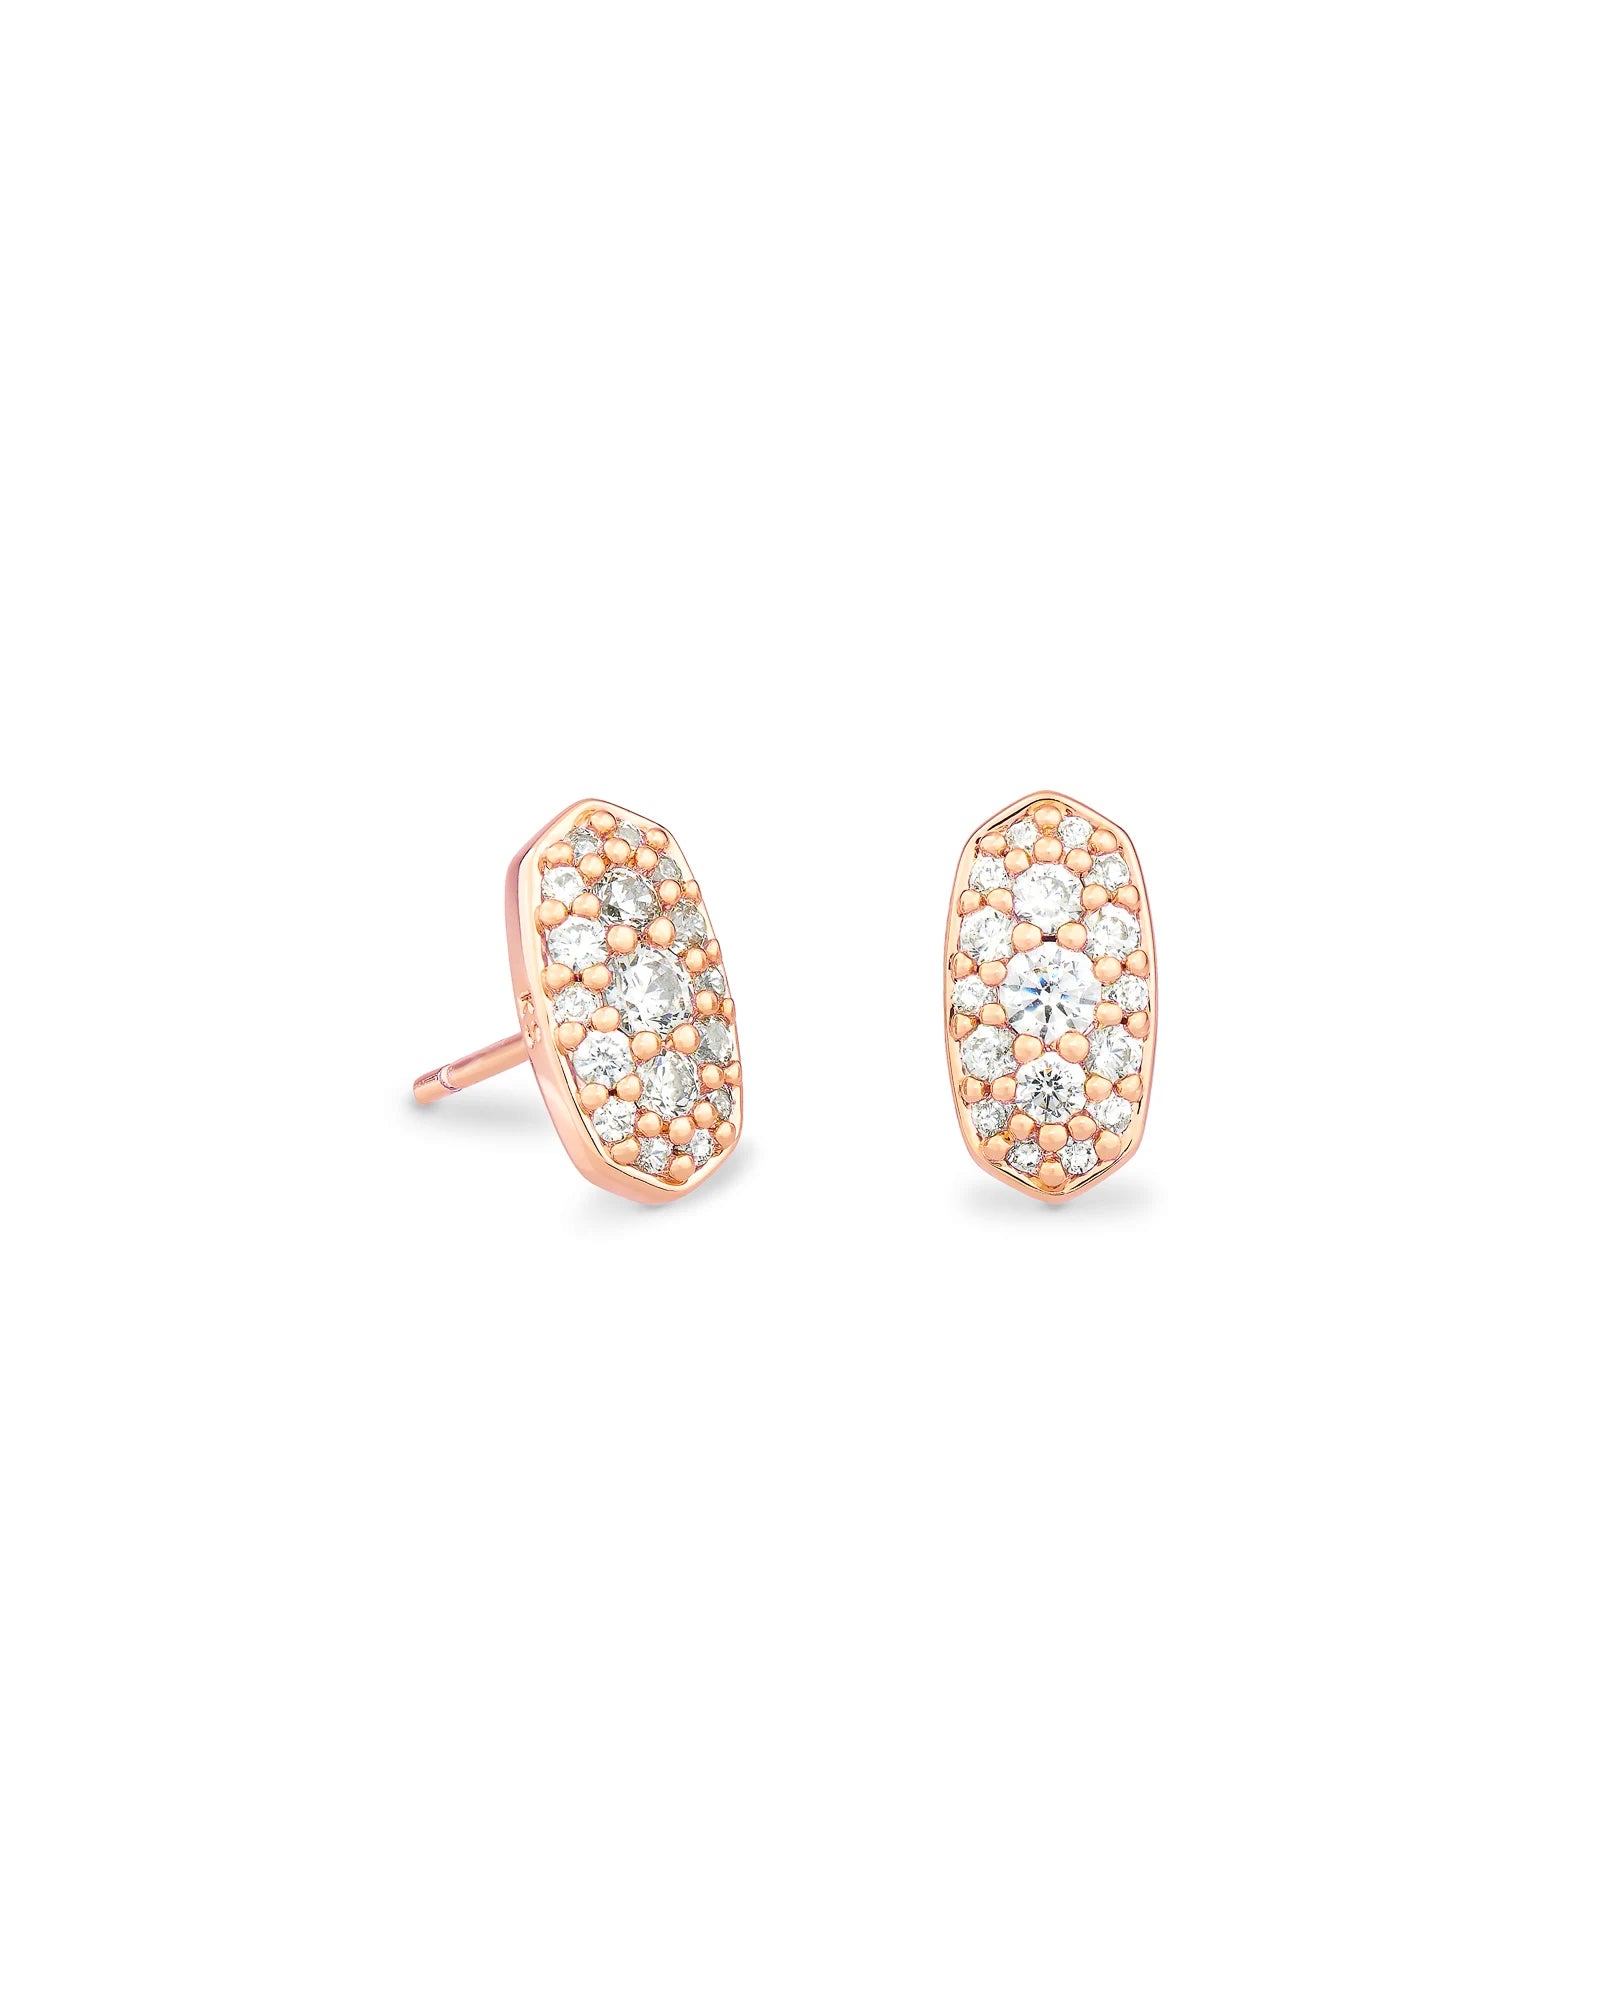 KENDRA SCOTT- Grayson Stud Earrings in Rose Gold